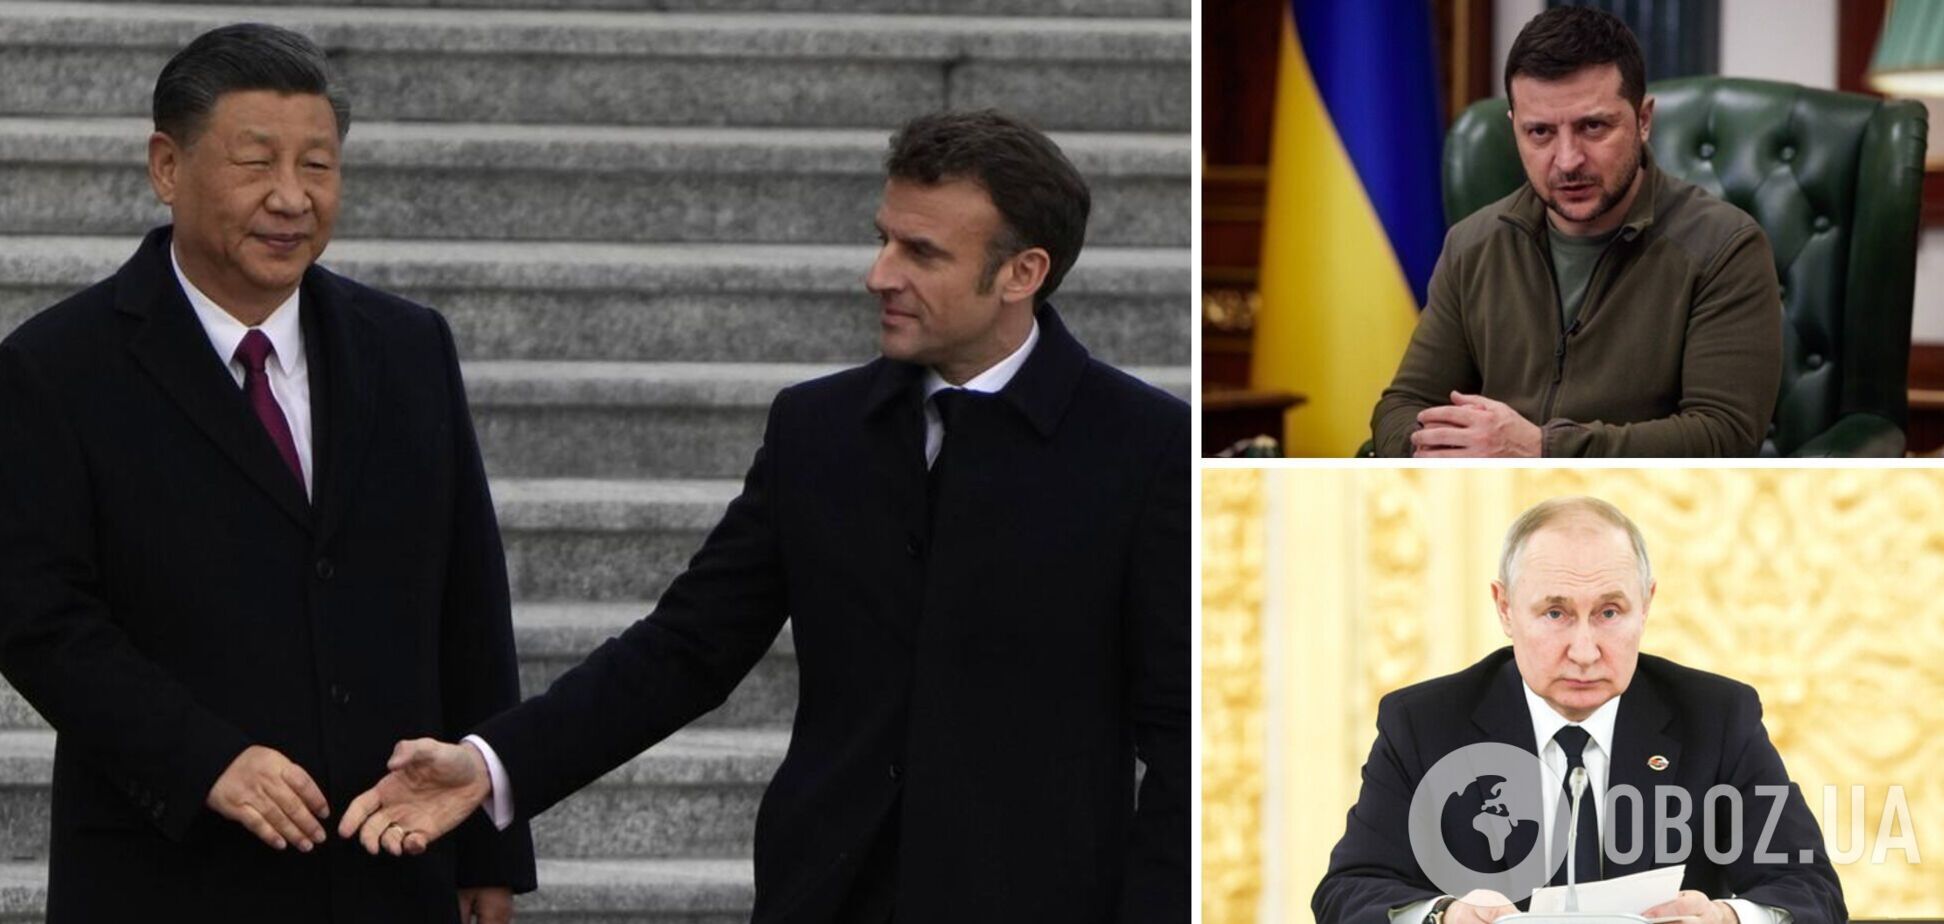 Погода сейчас 'военная': Макрон после визита к Си сделал интересное заявление о переговорах Украины с РФ